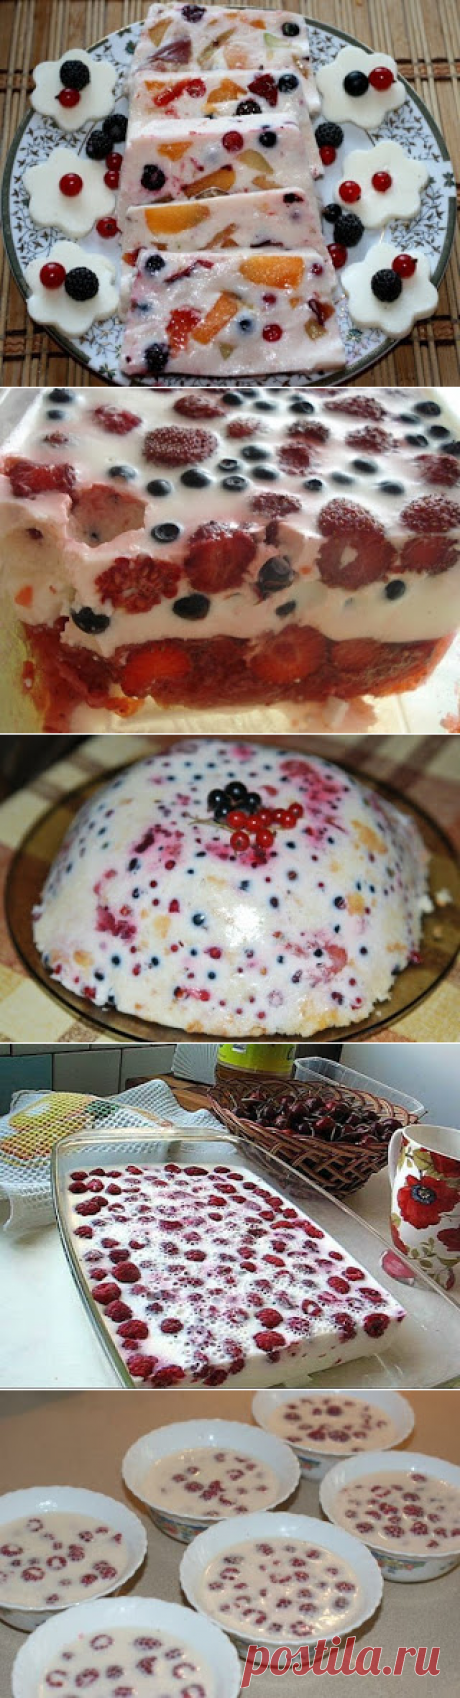 Самые вкусные рецепты: Сметанный десерт с ягодами